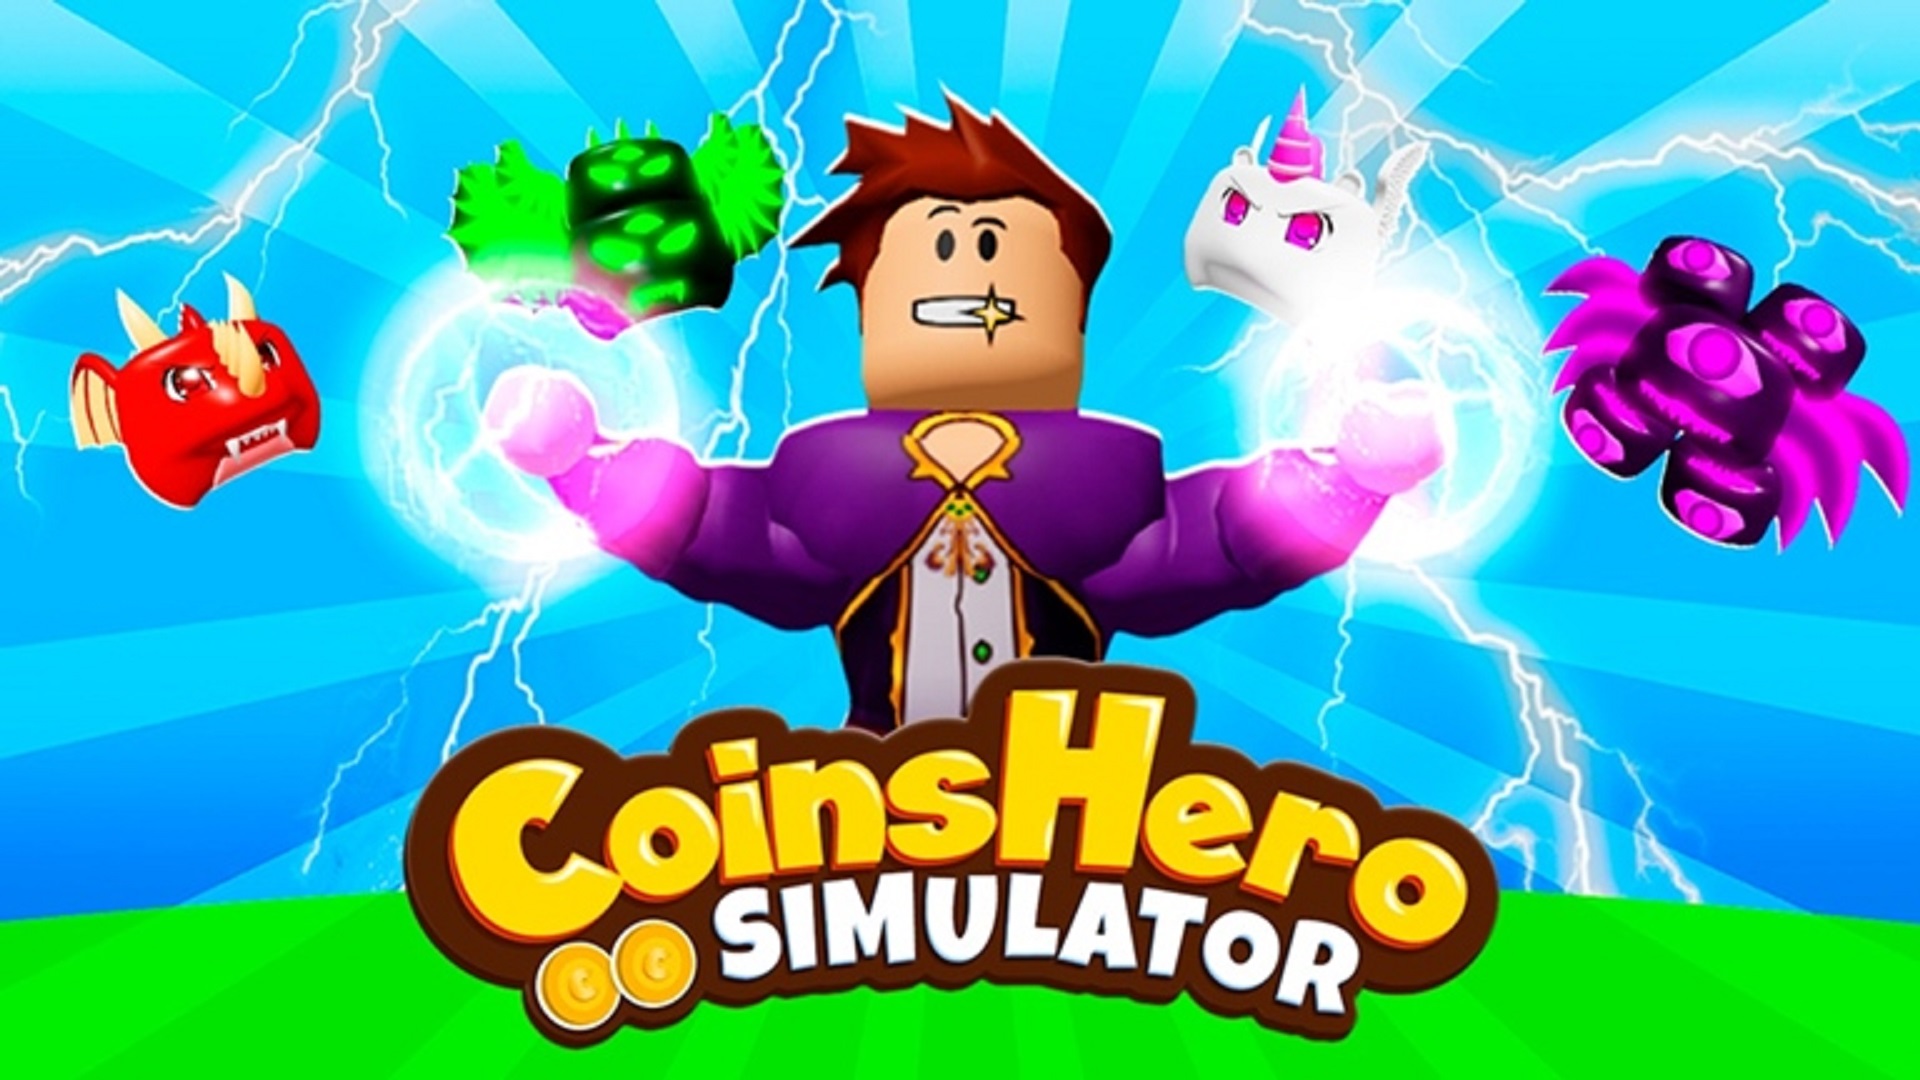 Roblox - Códigos para o Coins Hero Simulator (Novembro 2020)